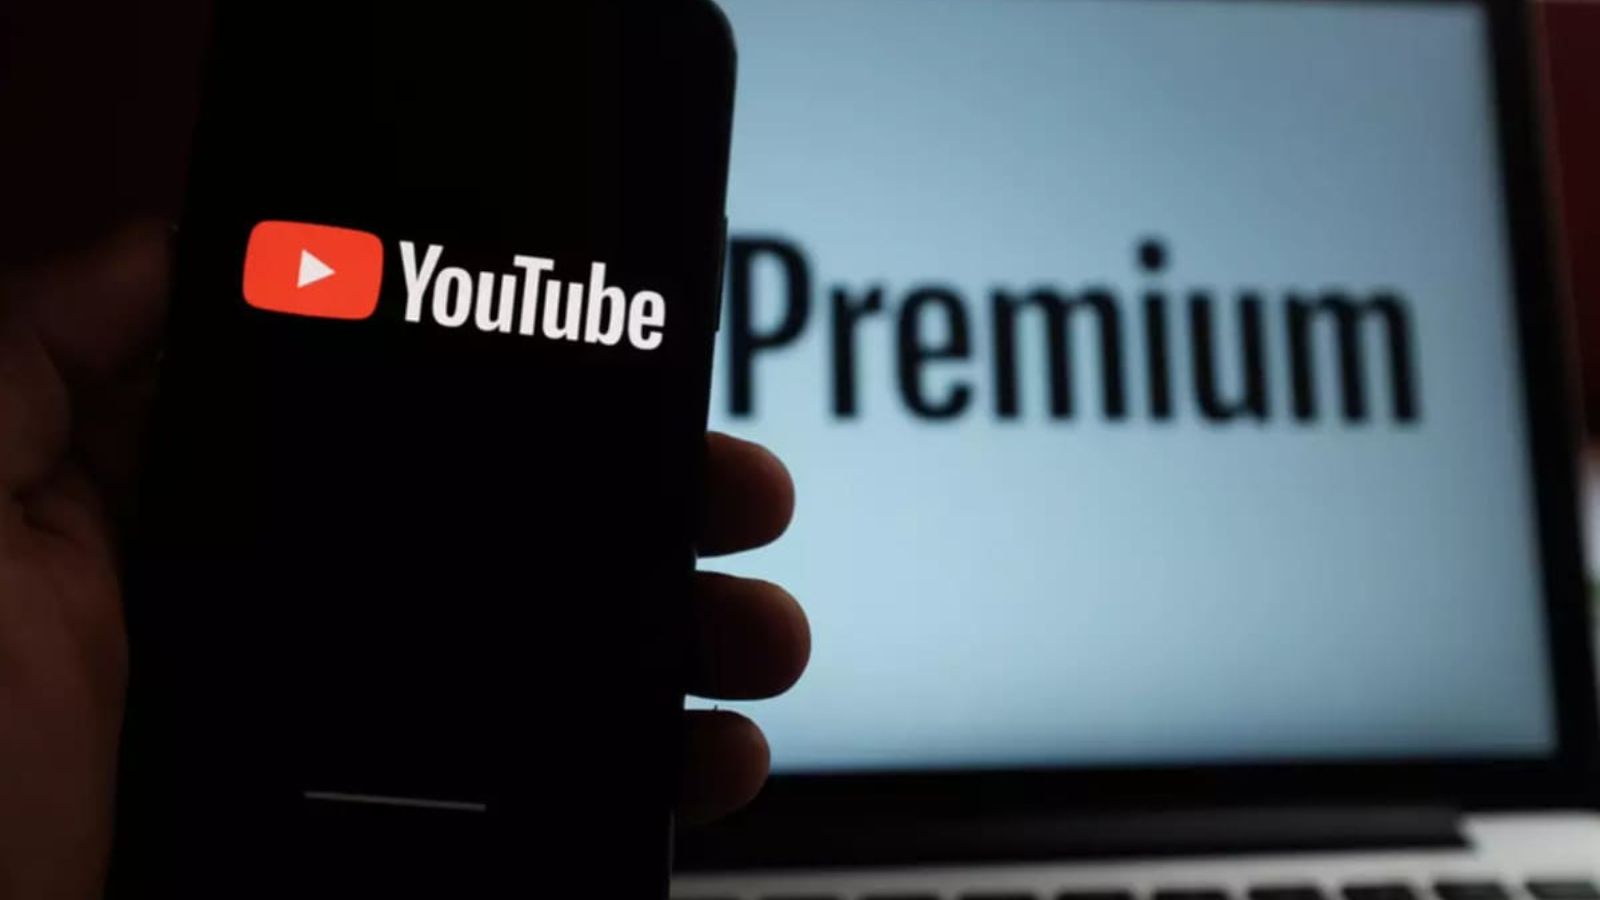 Niente più ADBlock, YouTube obbliga al Premium